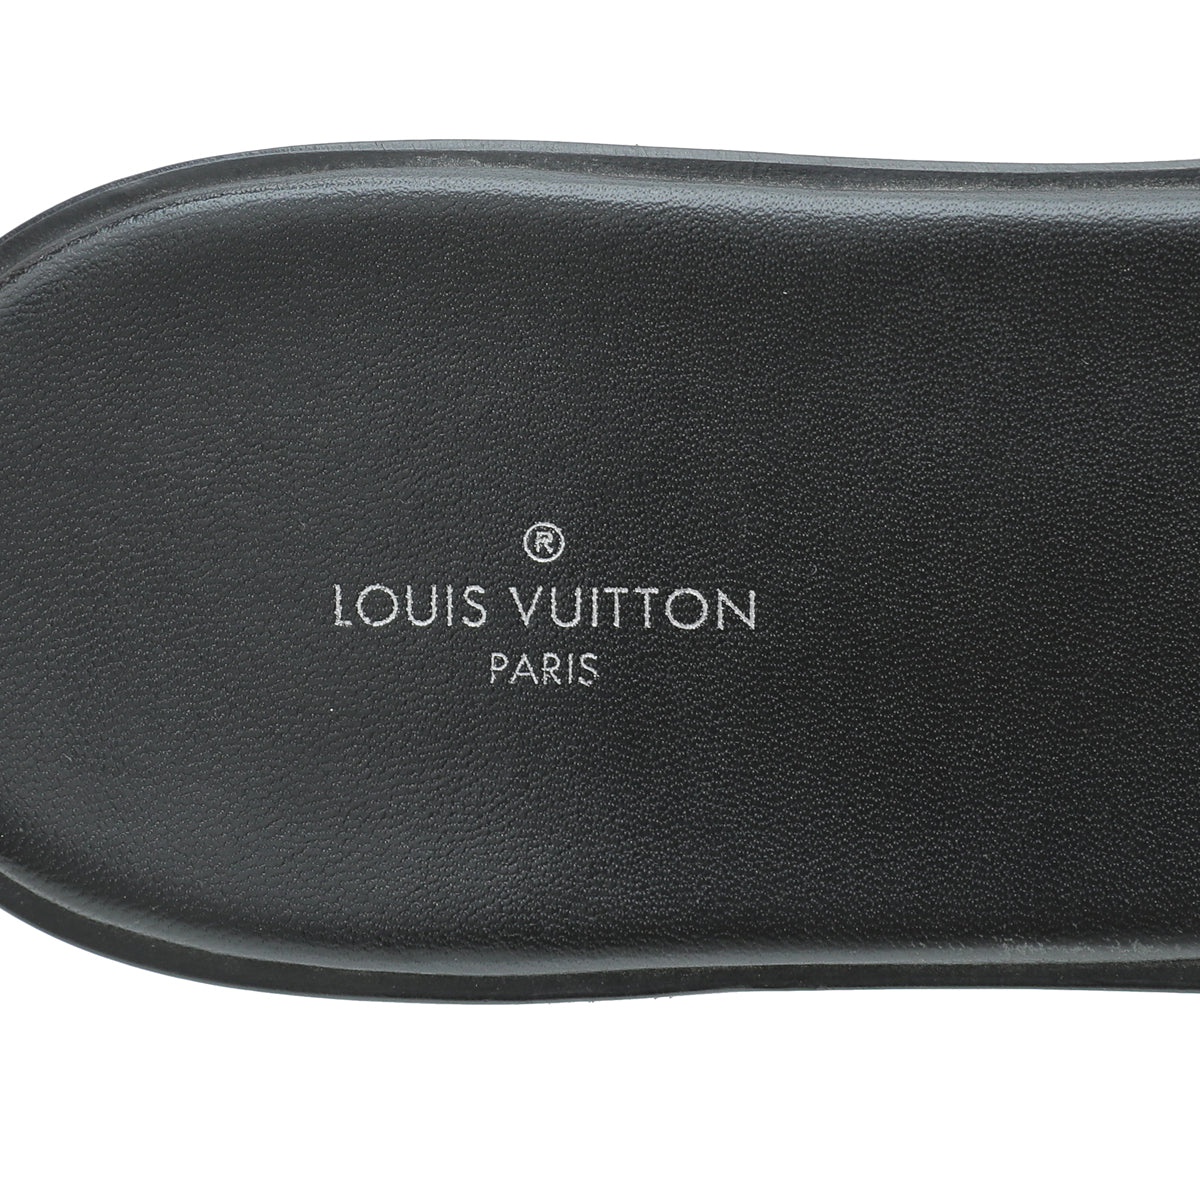 Louis Vuitton, Shoes, Authentic Louis Vuitton Lock It Flat Mule